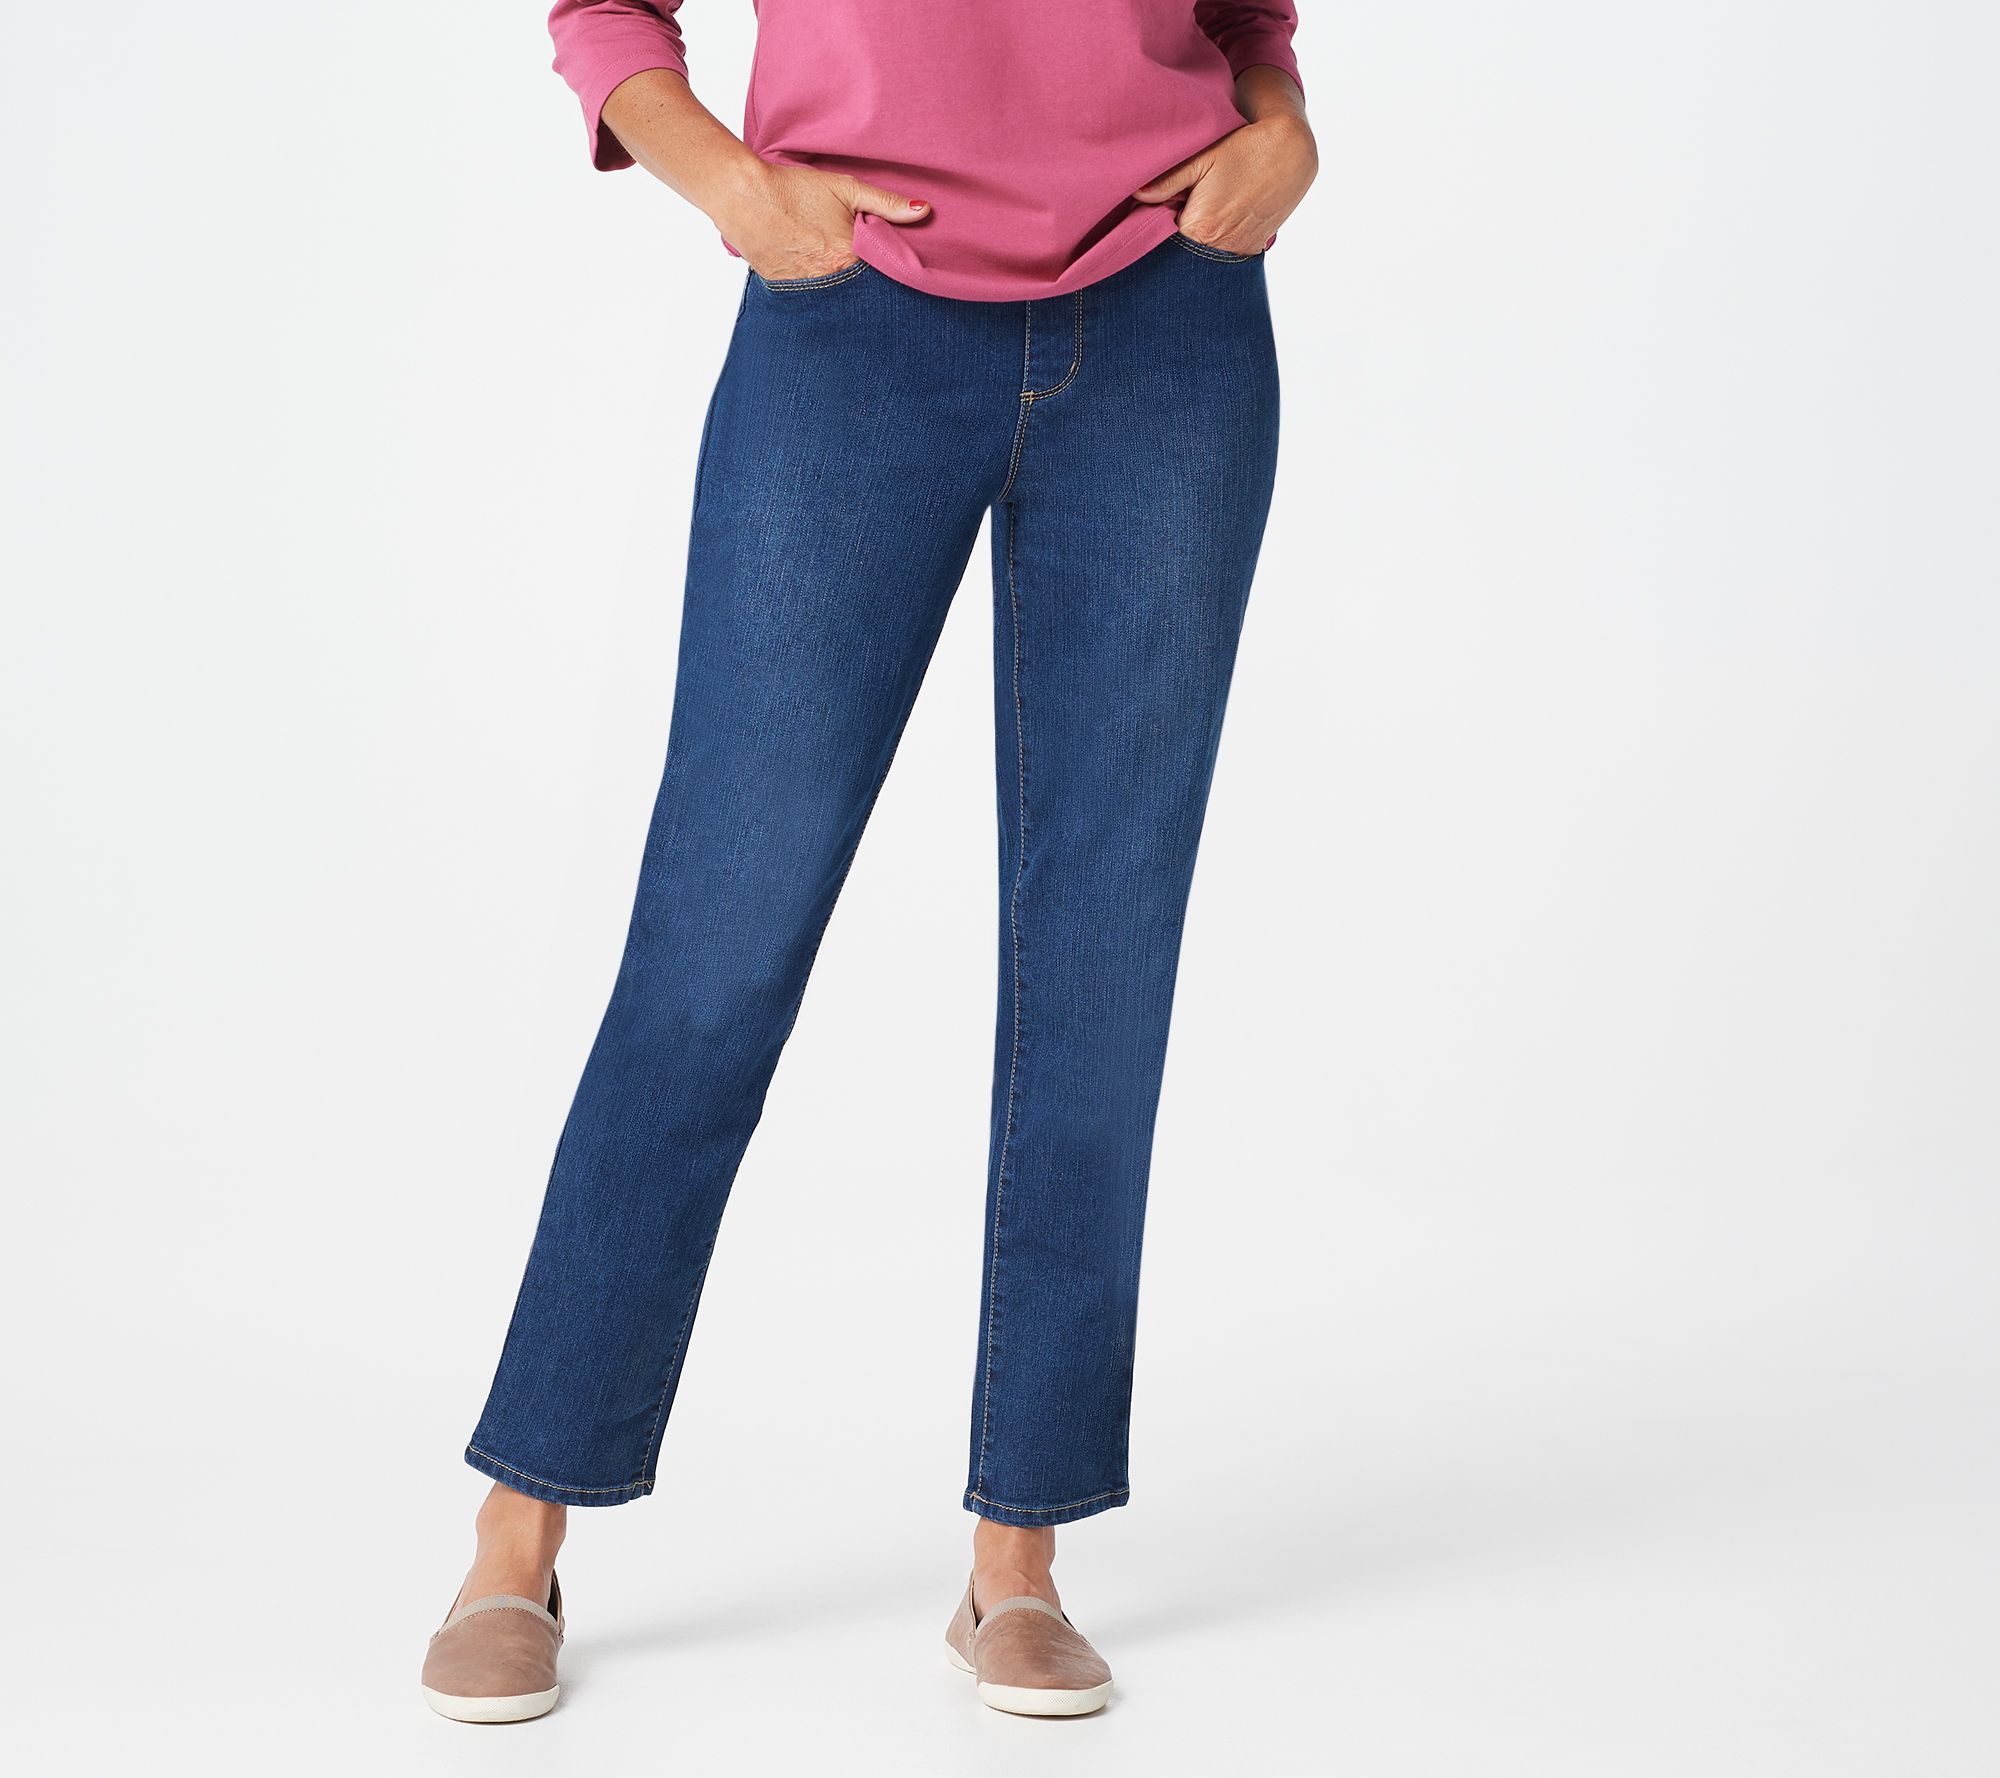 denim & company jeans on qvc